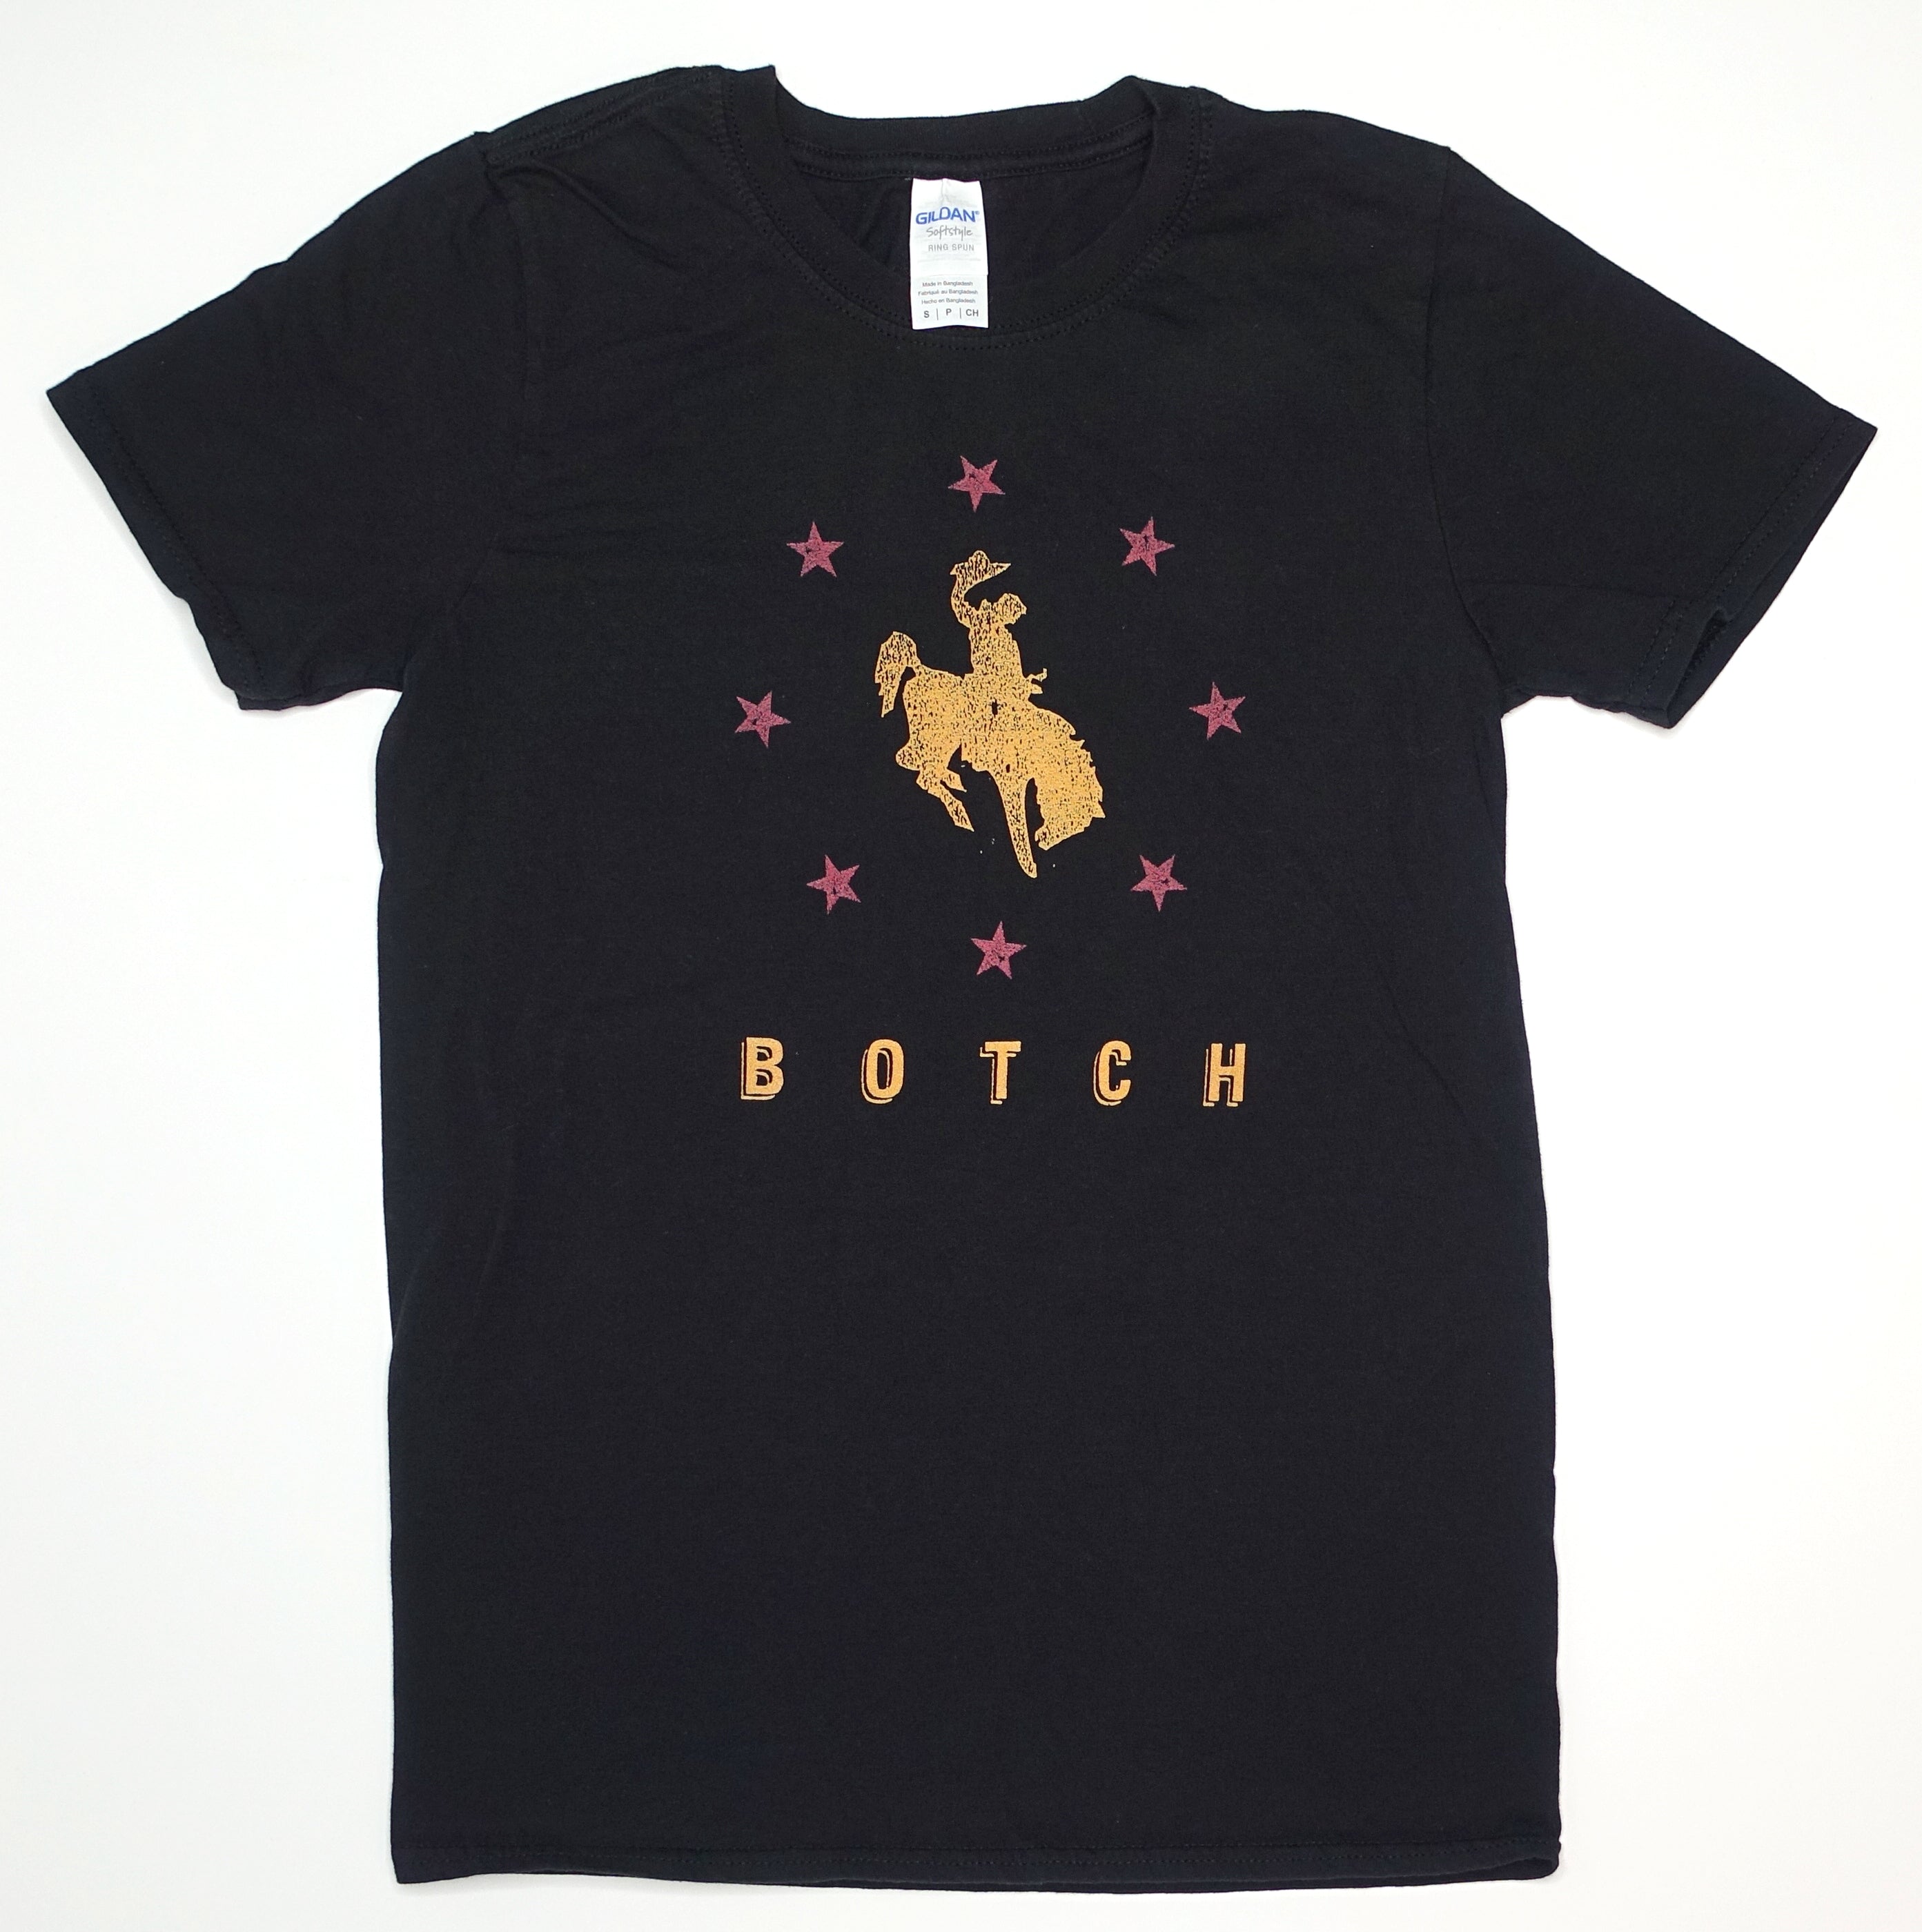 Botch - 061502 Tour Shirt Size Small